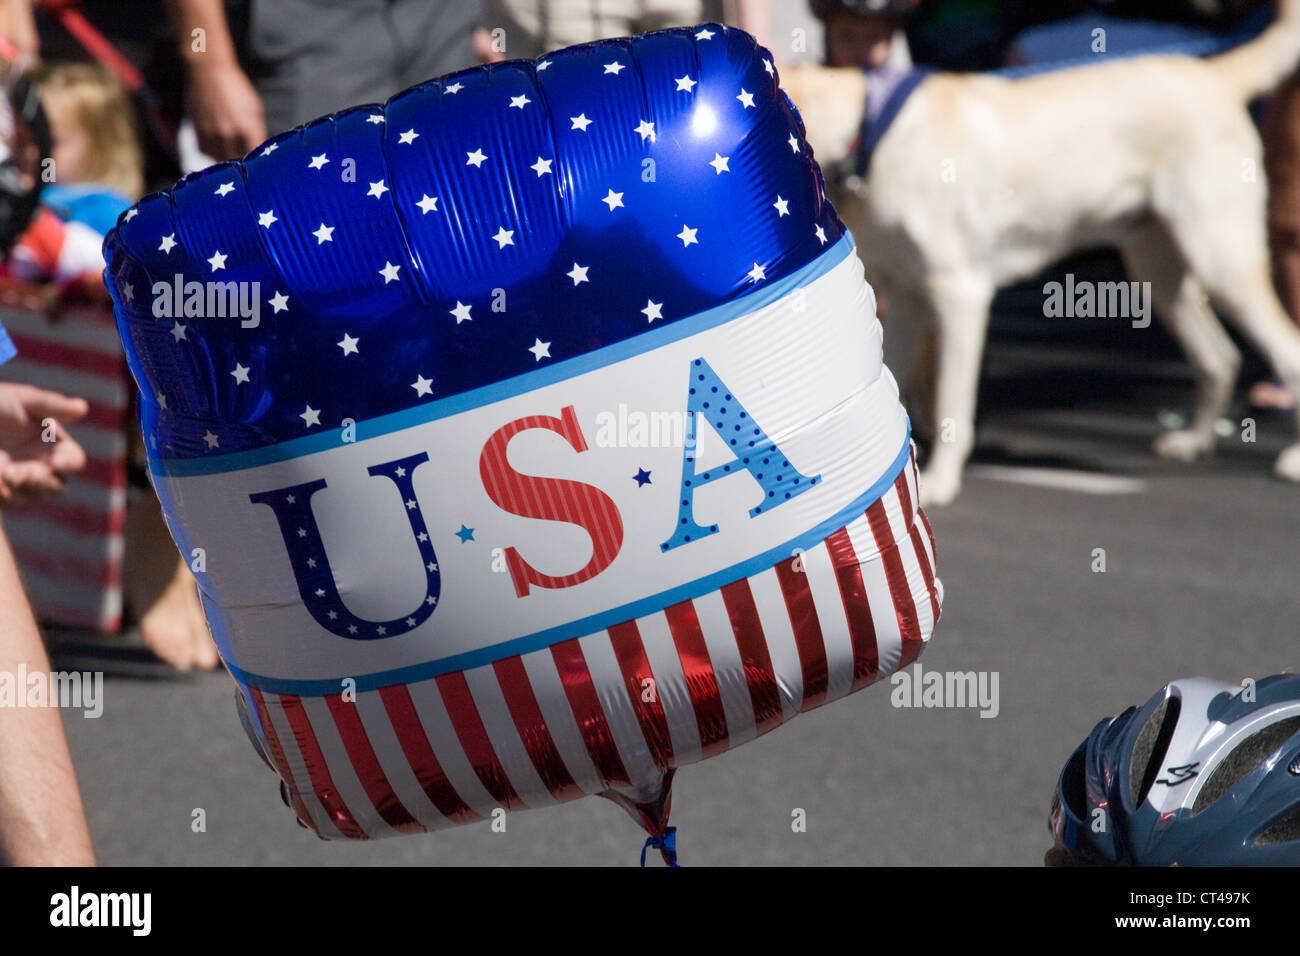 Eine patriotische USA Ballon am 4. Juli Parade Stockfoto